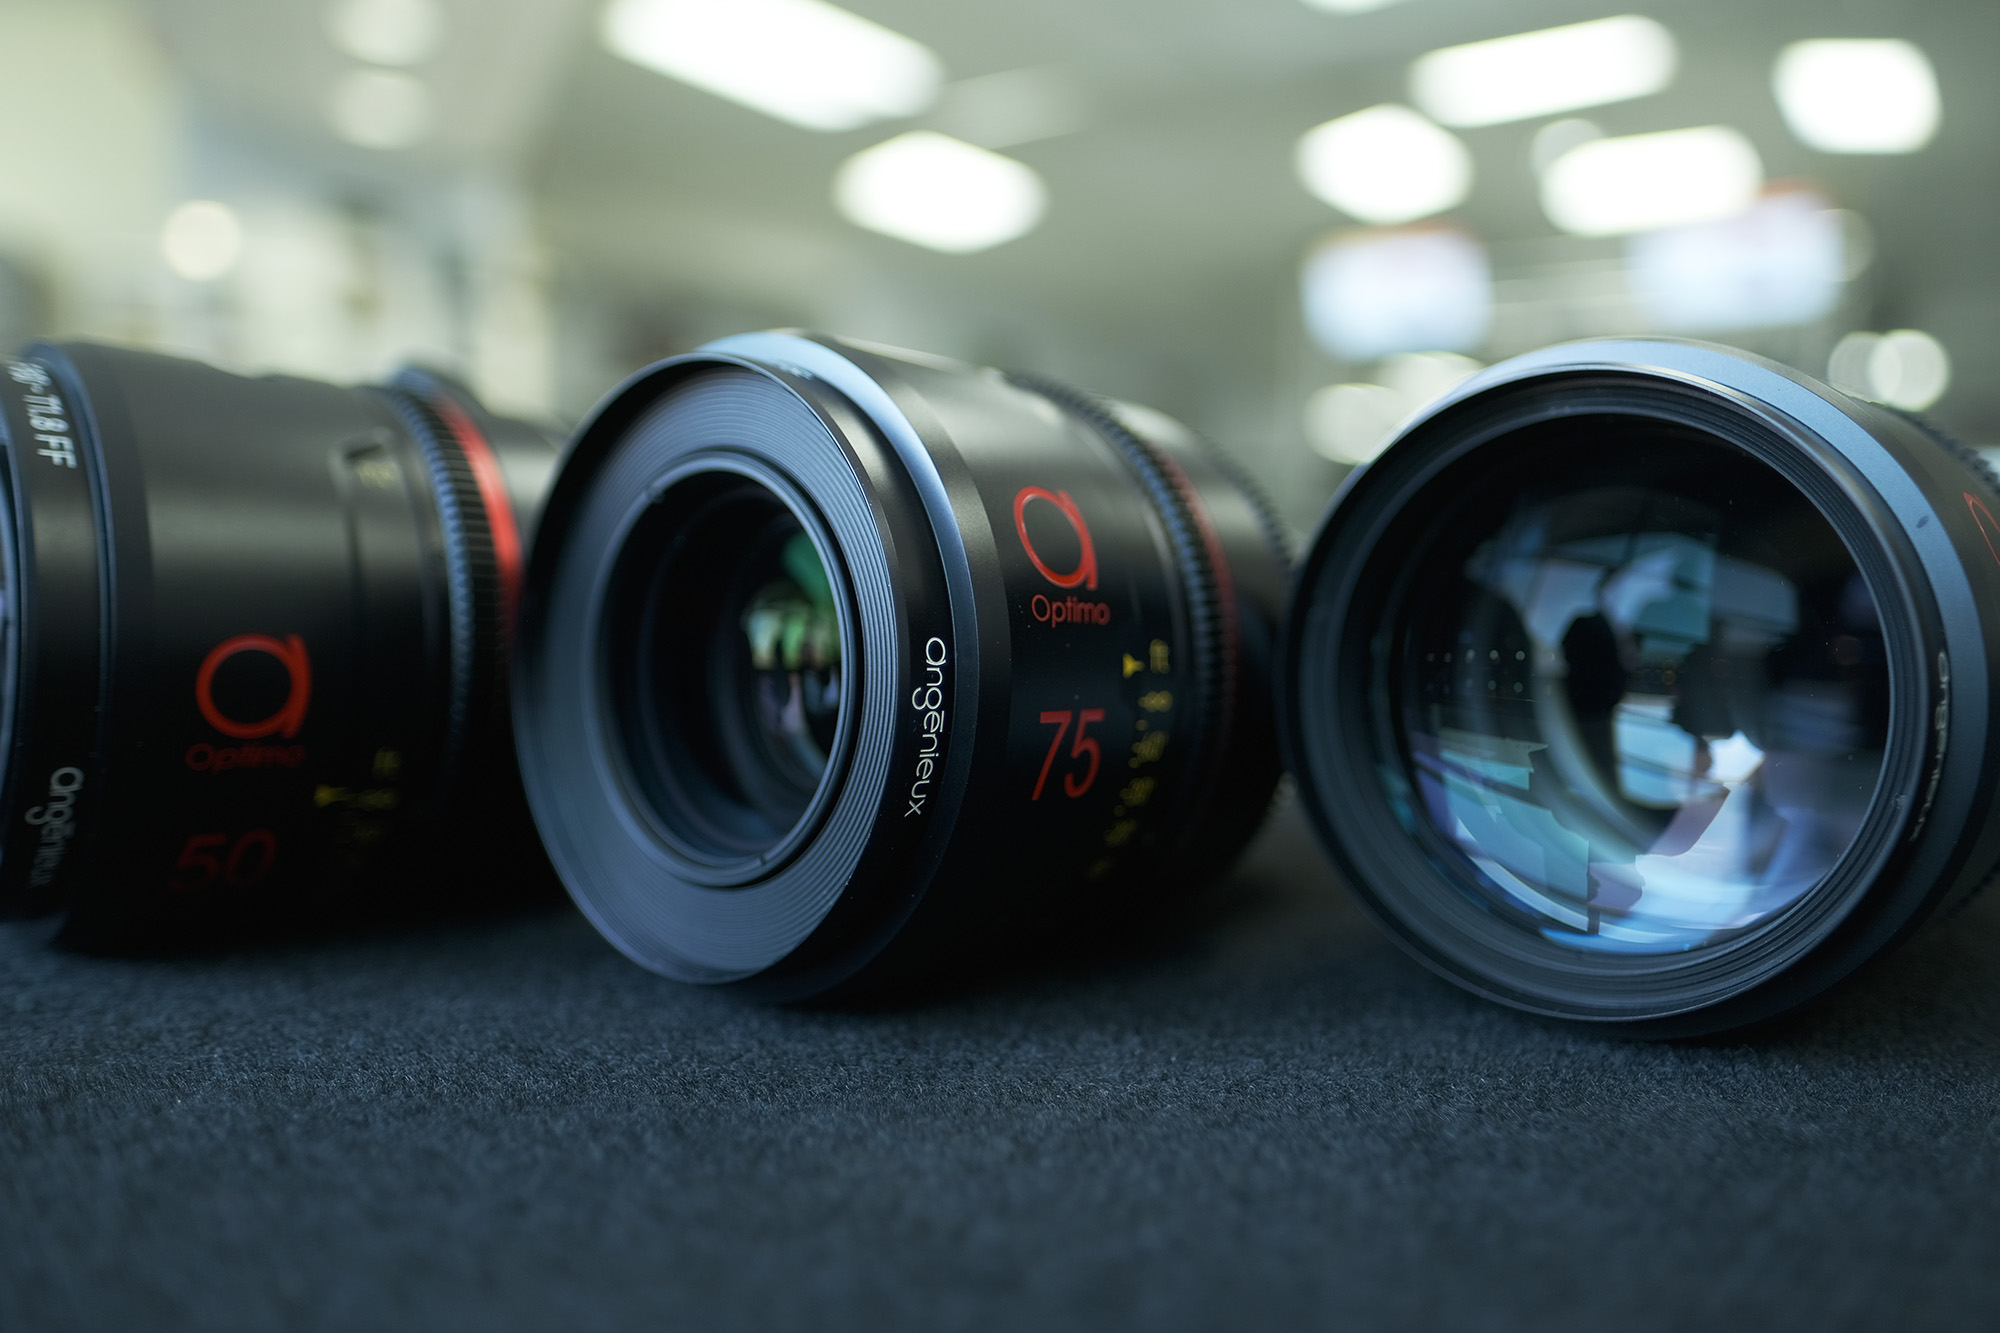 Angenieux Optimo Prime Full Format Lens Set - 75mm